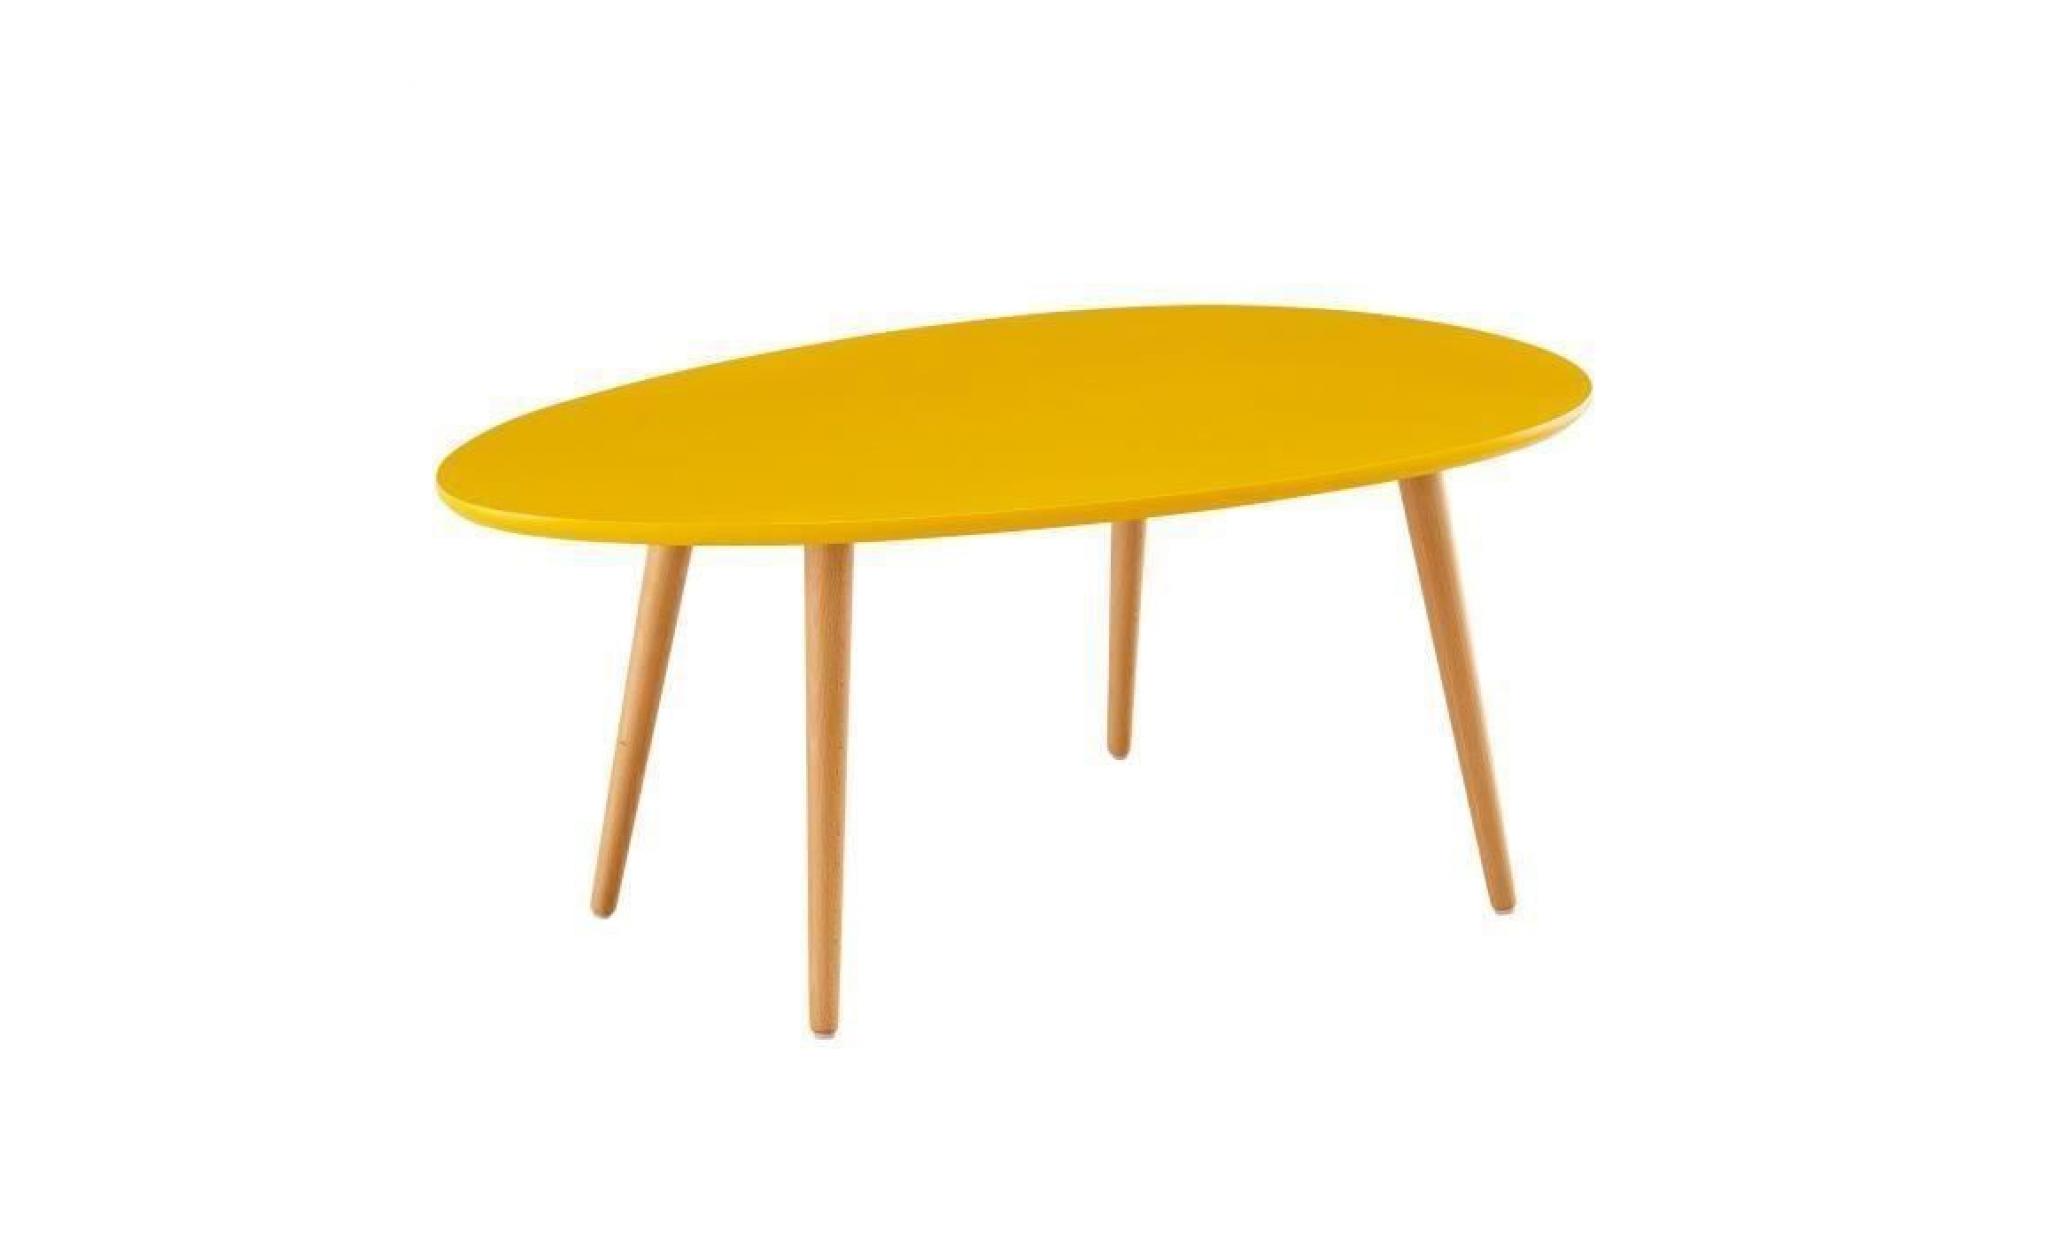 stone table basse ovale scandinave jaune moutarde laqué   l 98 x l 61 cm pas cher